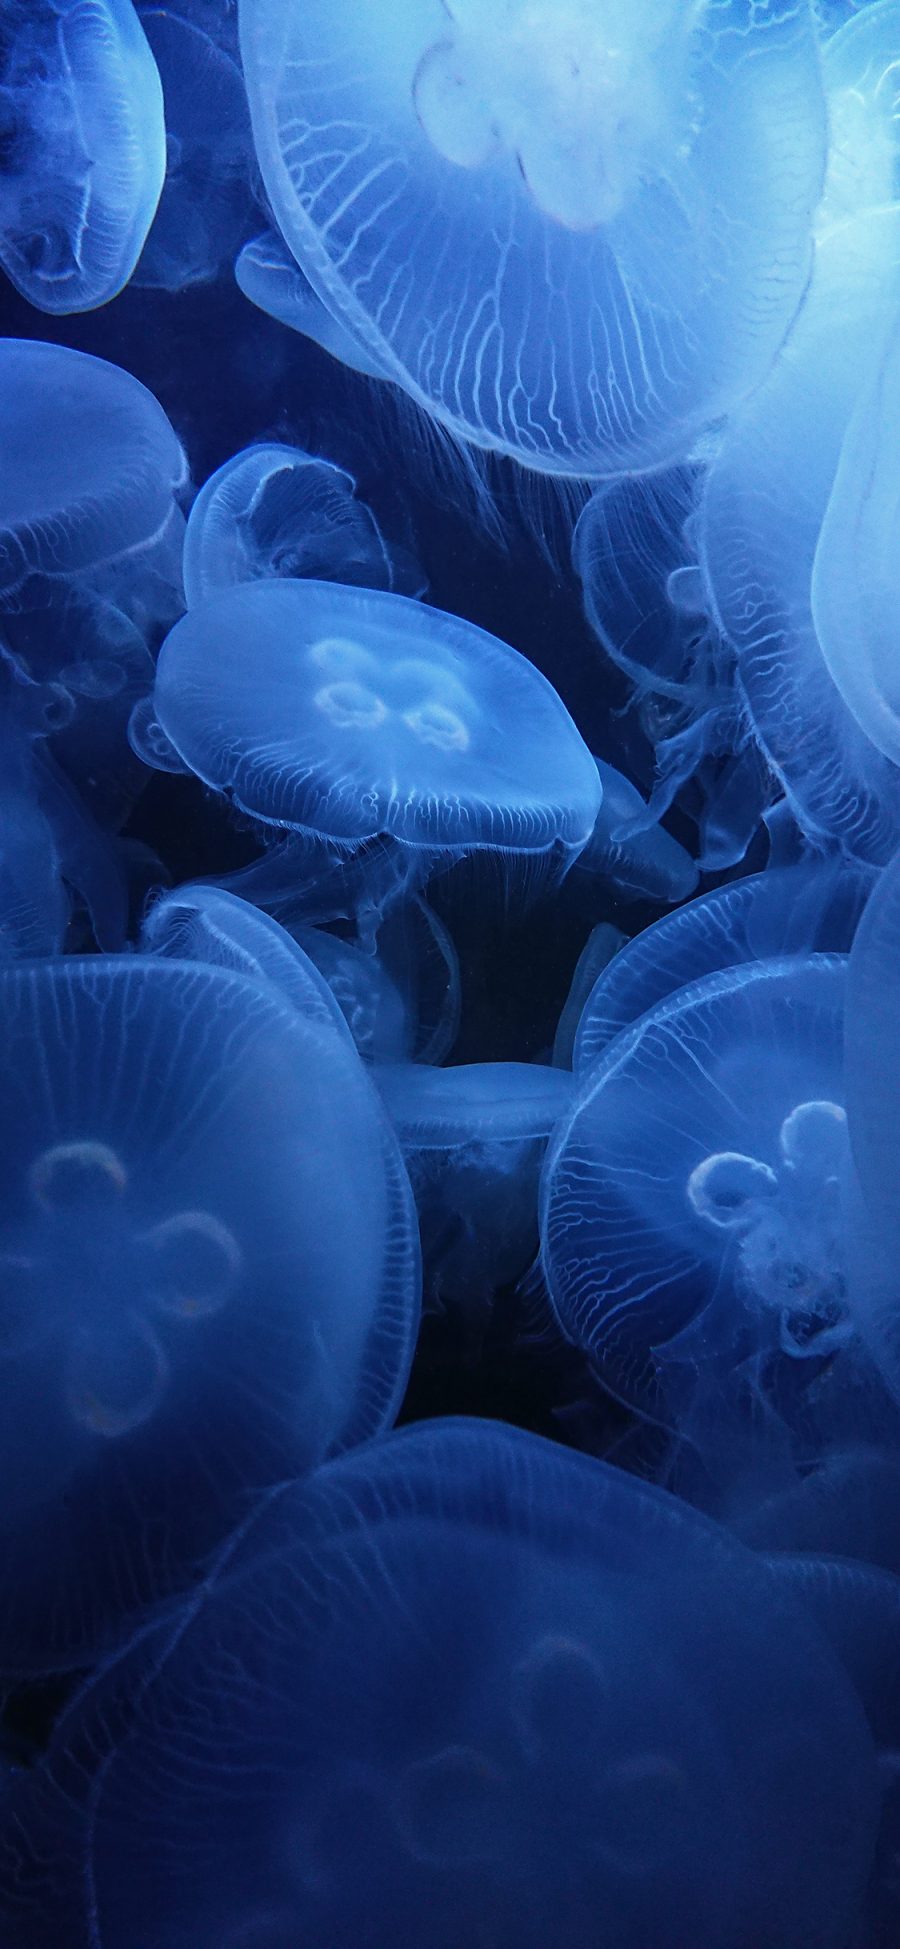 [2436×1125]水母 密集 浮游  透明 苹果手机壁纸图片